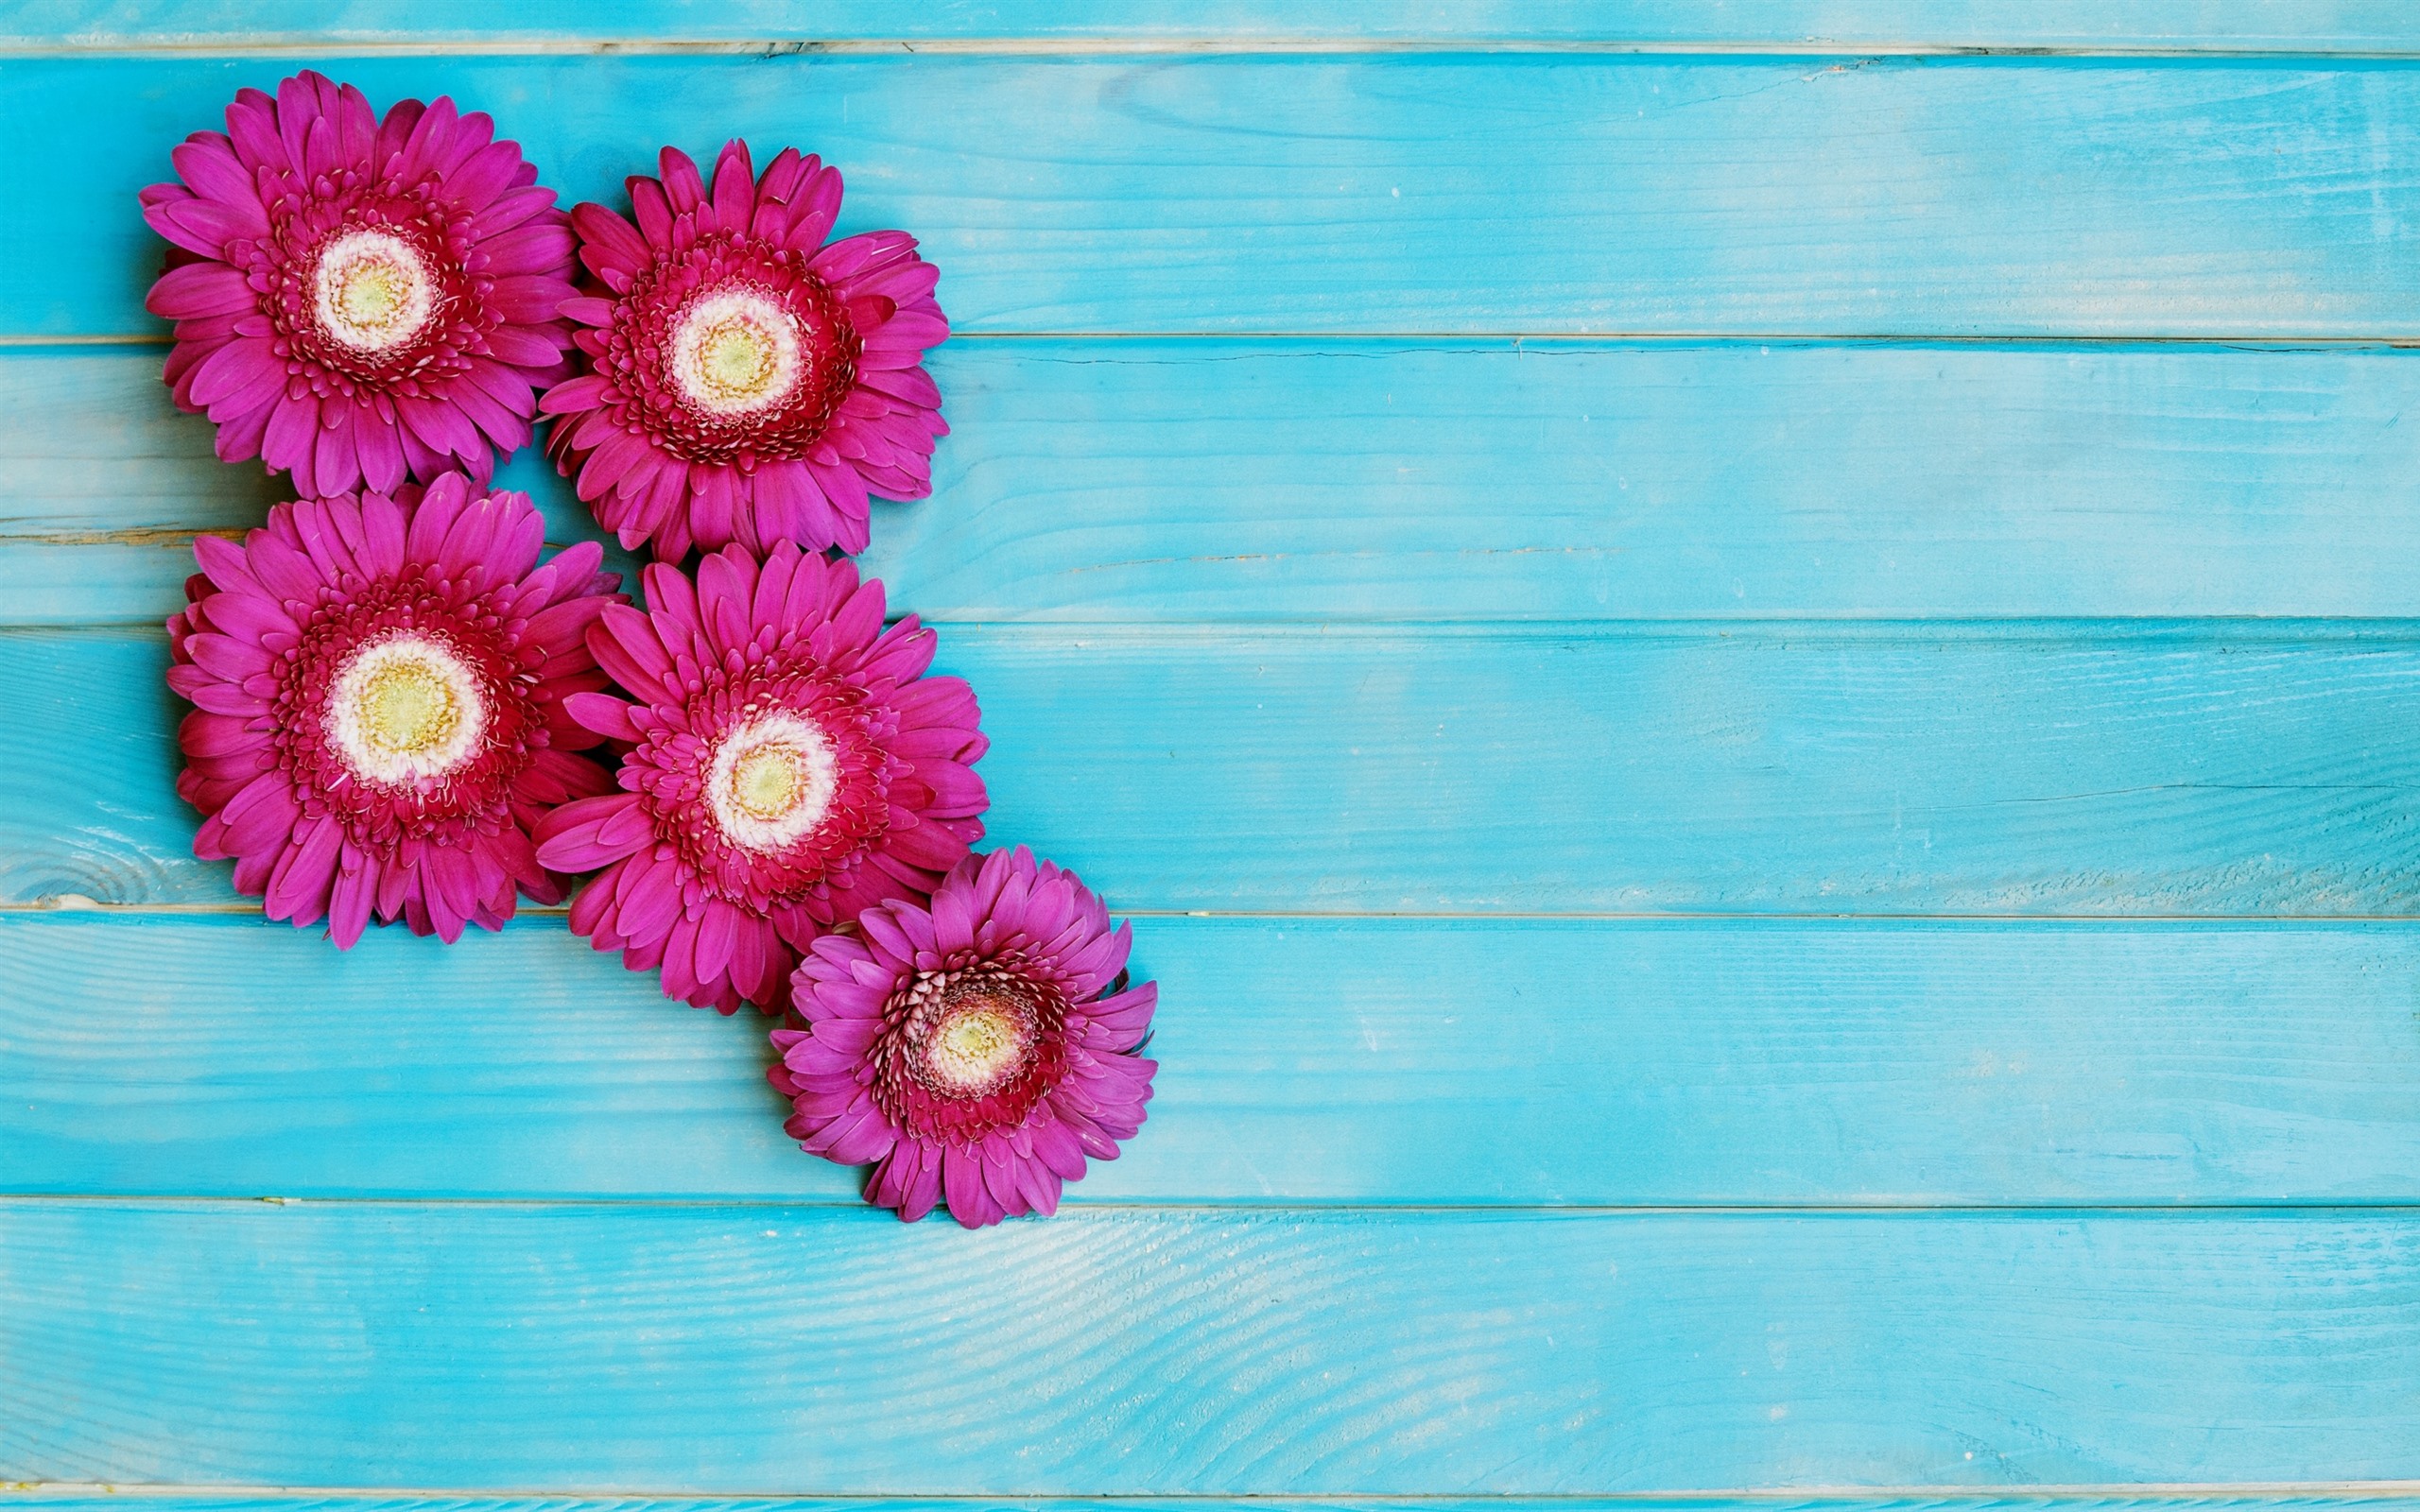 Wallpaper Pink Gerbera Flowers, Blue Wood Background - Wood Background With Flowers Hd - HD Wallpaper 